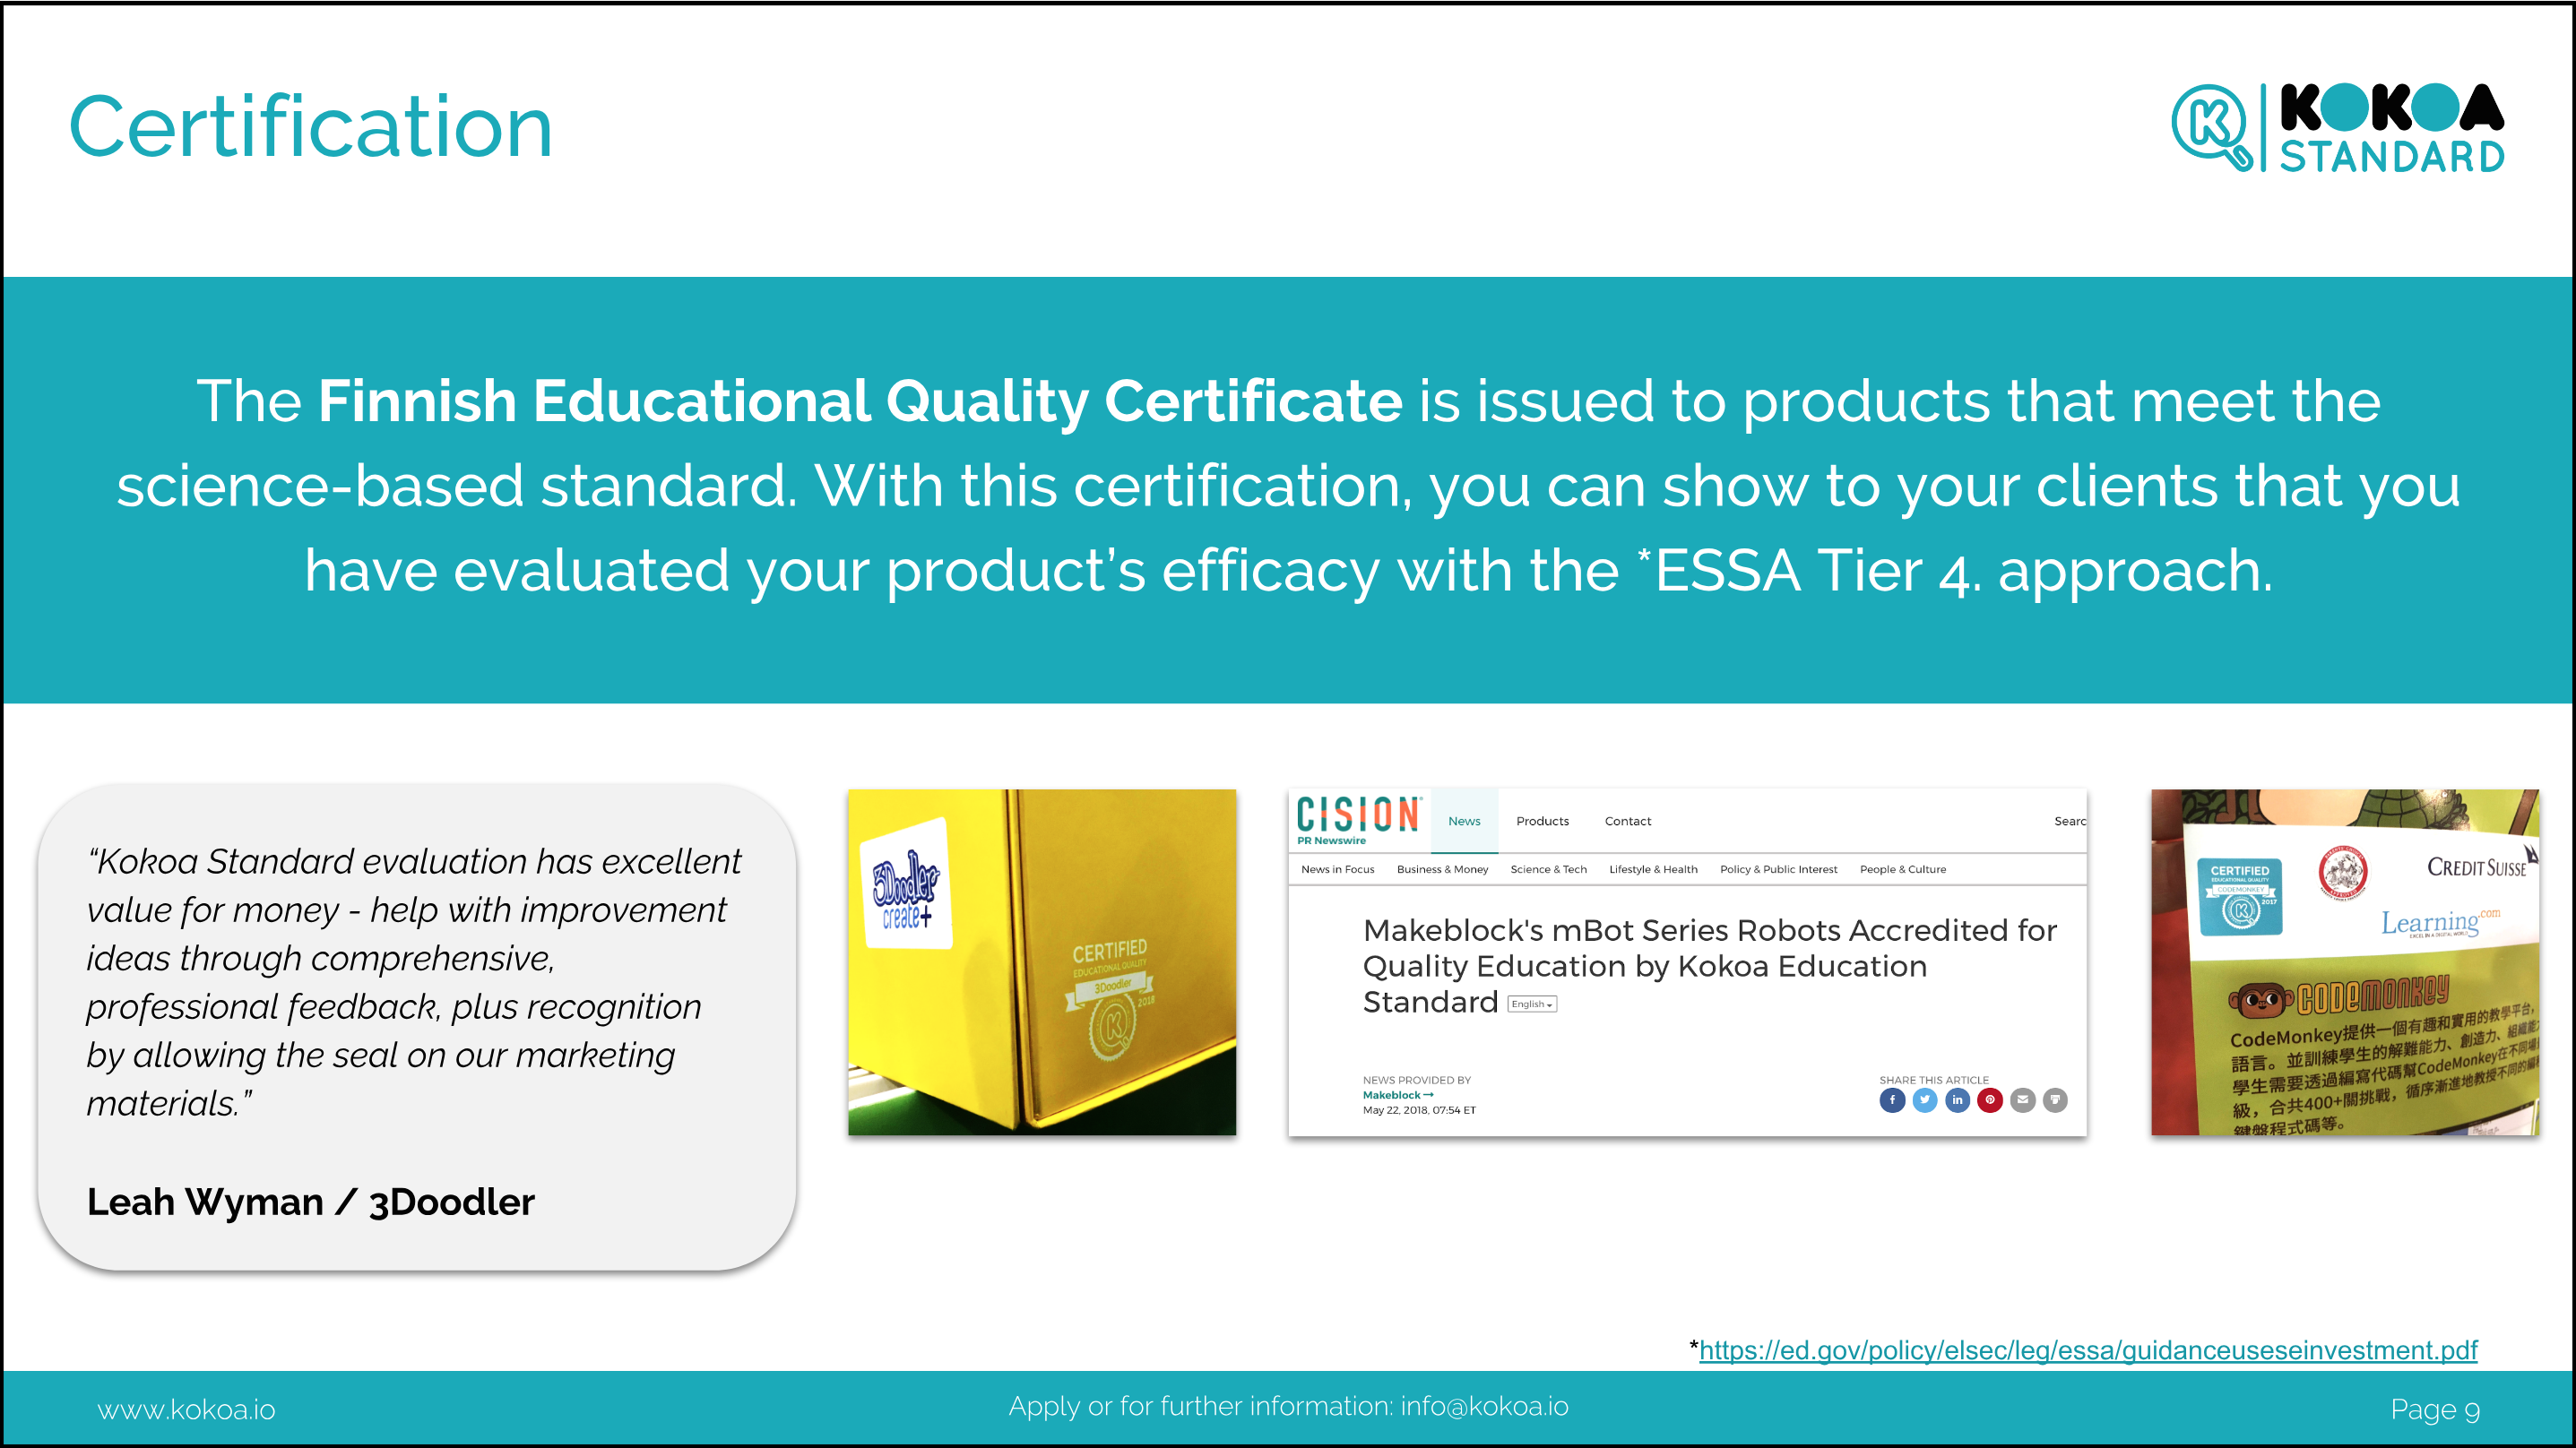 EdTech Product Certificate as a marketing asset